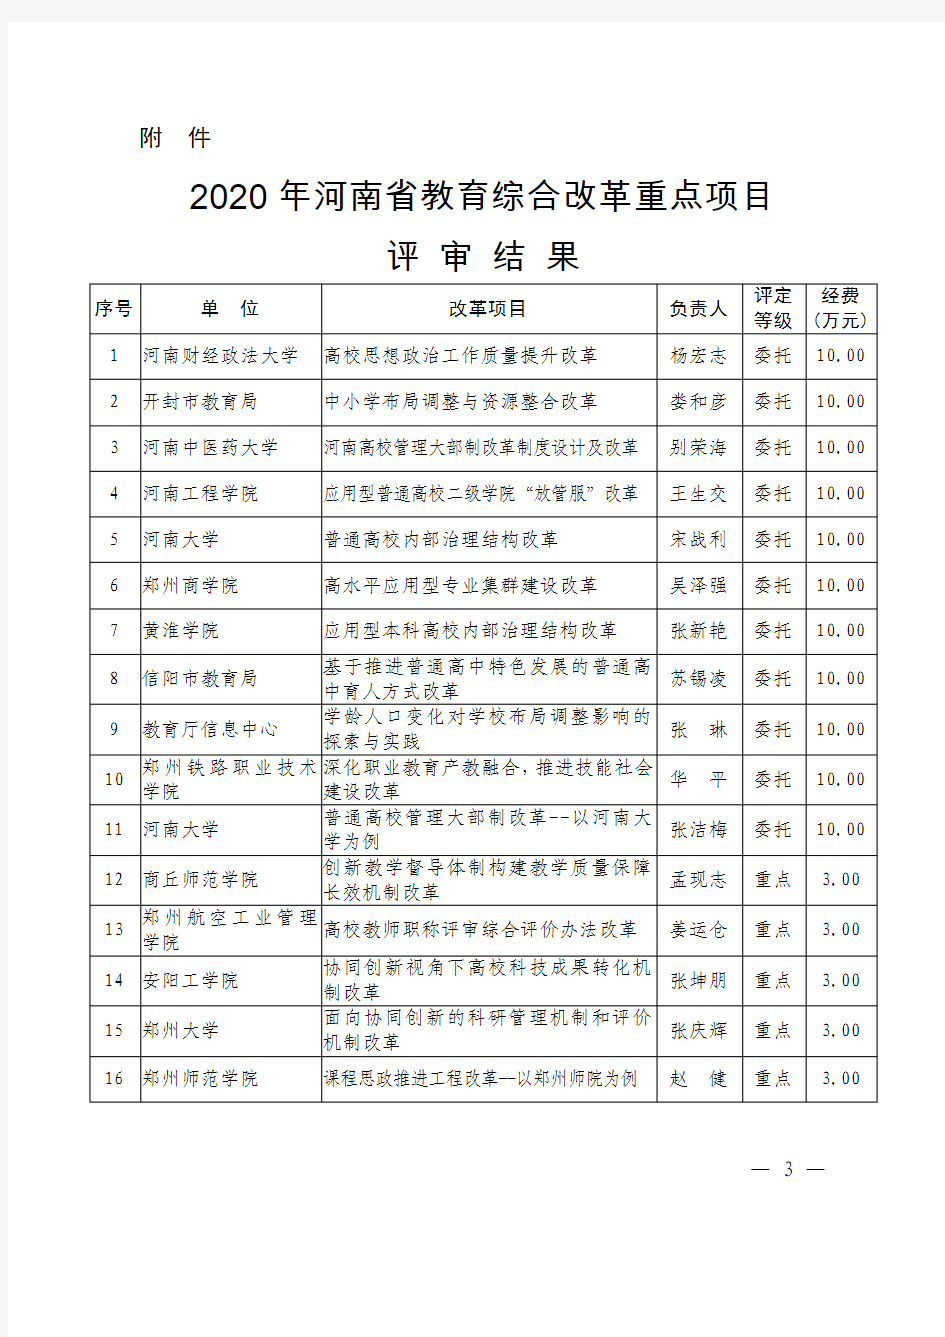 2020年河南省教育综合改革重点项目评审结果